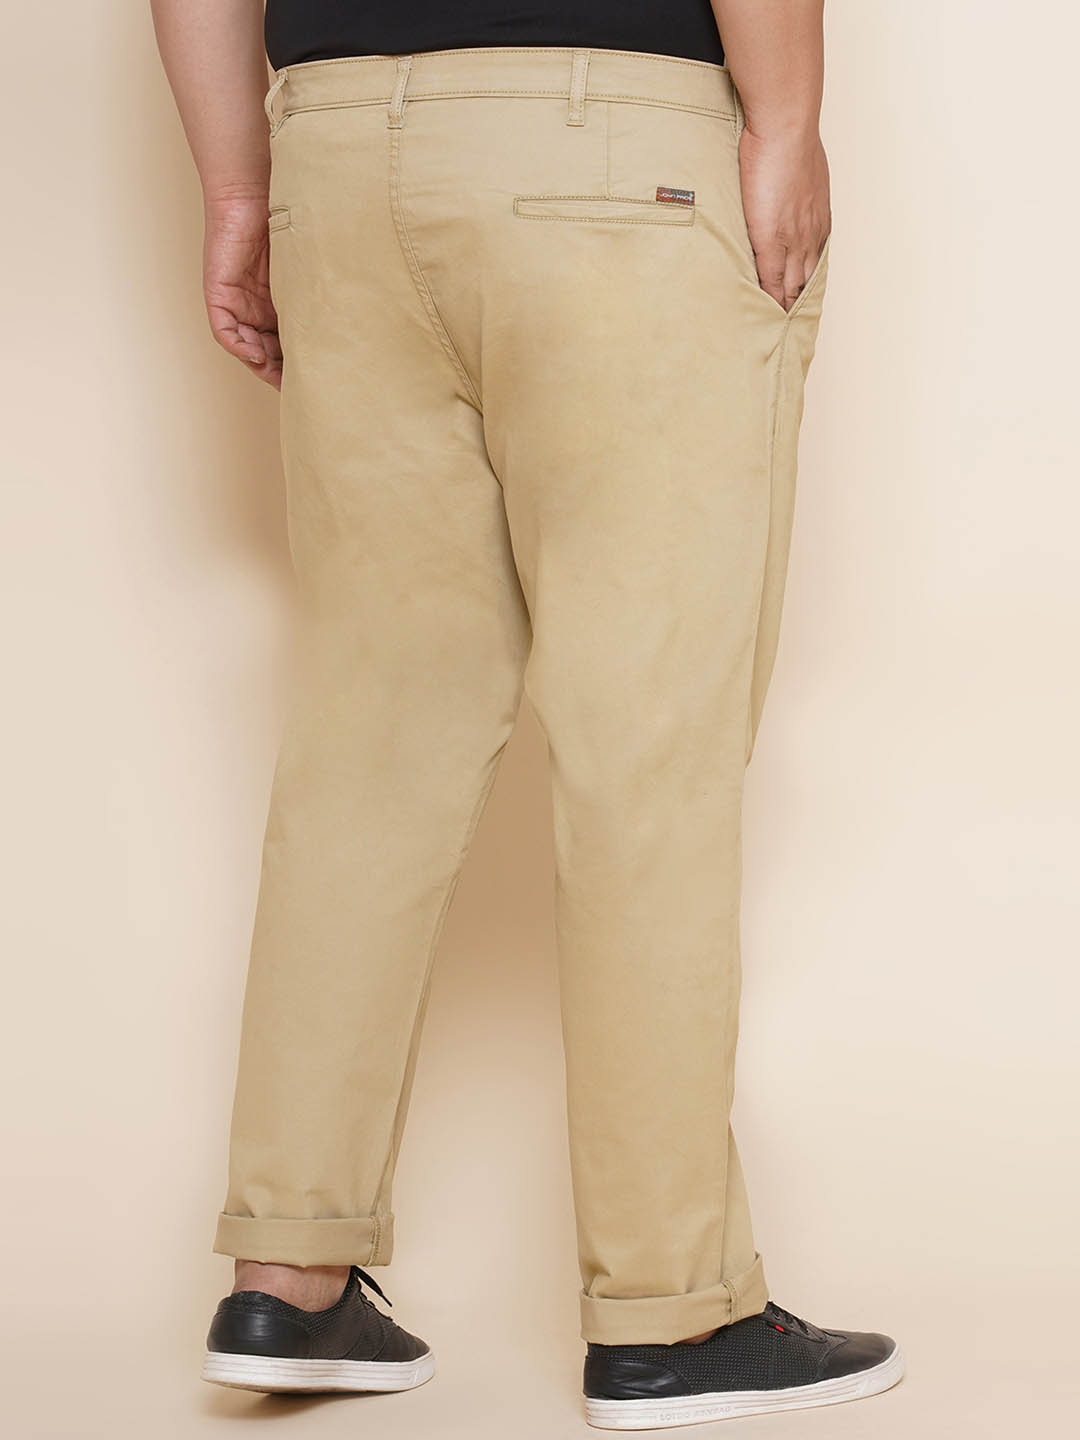 bottomwear/trousers/JPTR21014/jptr21014-5.jpg